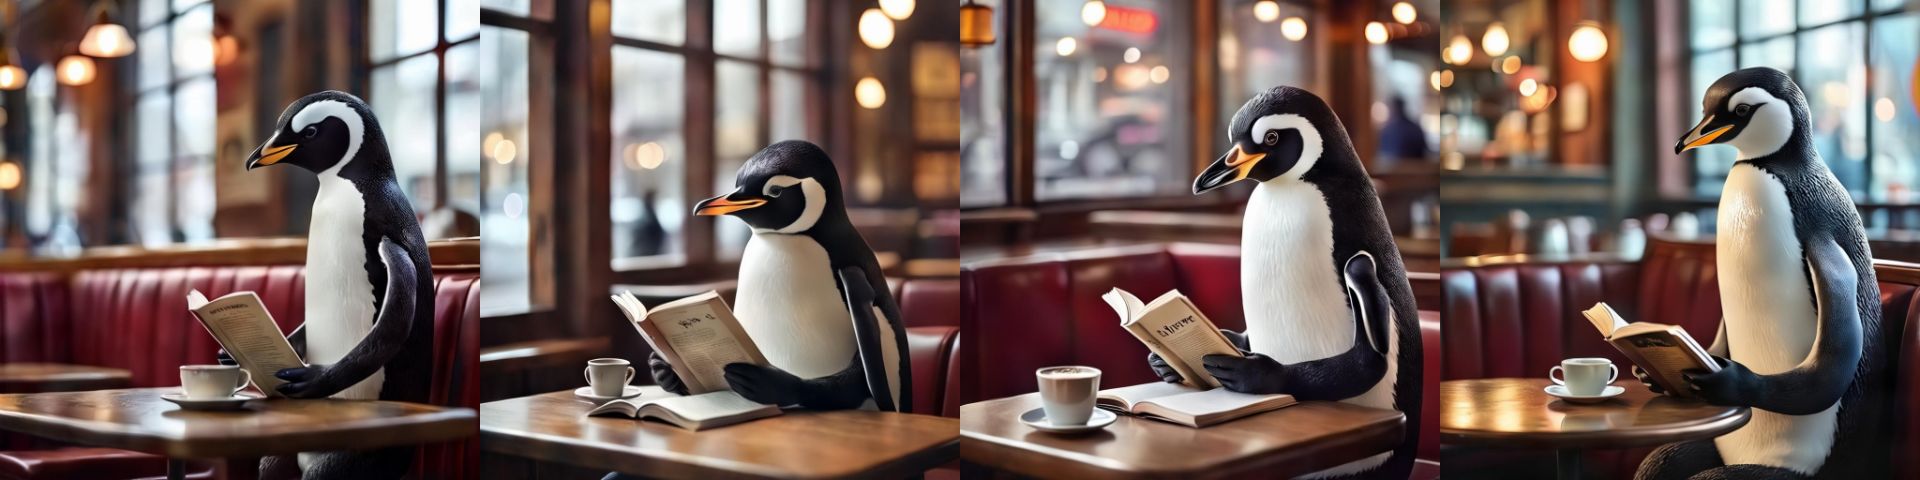 تصاویر ساخته شده از متن که پنگوئن را نشان می دهد که کتاب می خواند و قهوه می نوشد